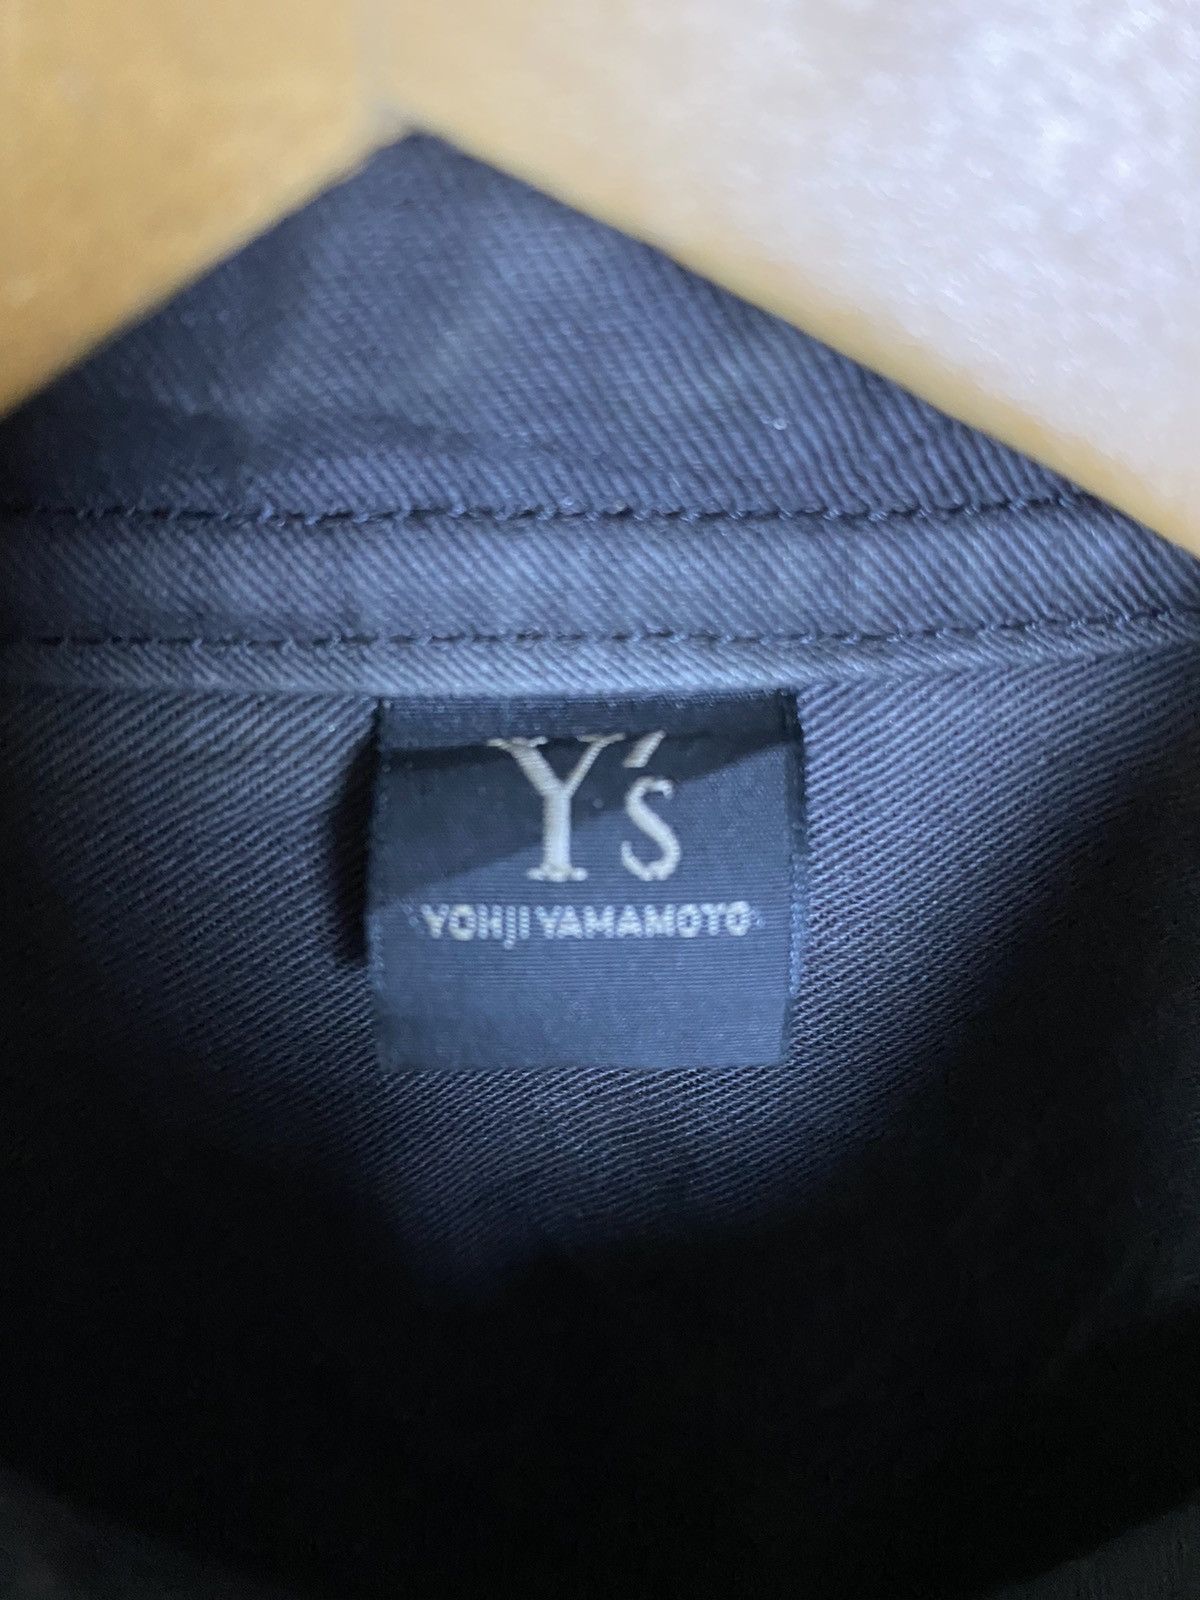 Vintage Y’s Yohji Yamamoto Leather Shirt - 6